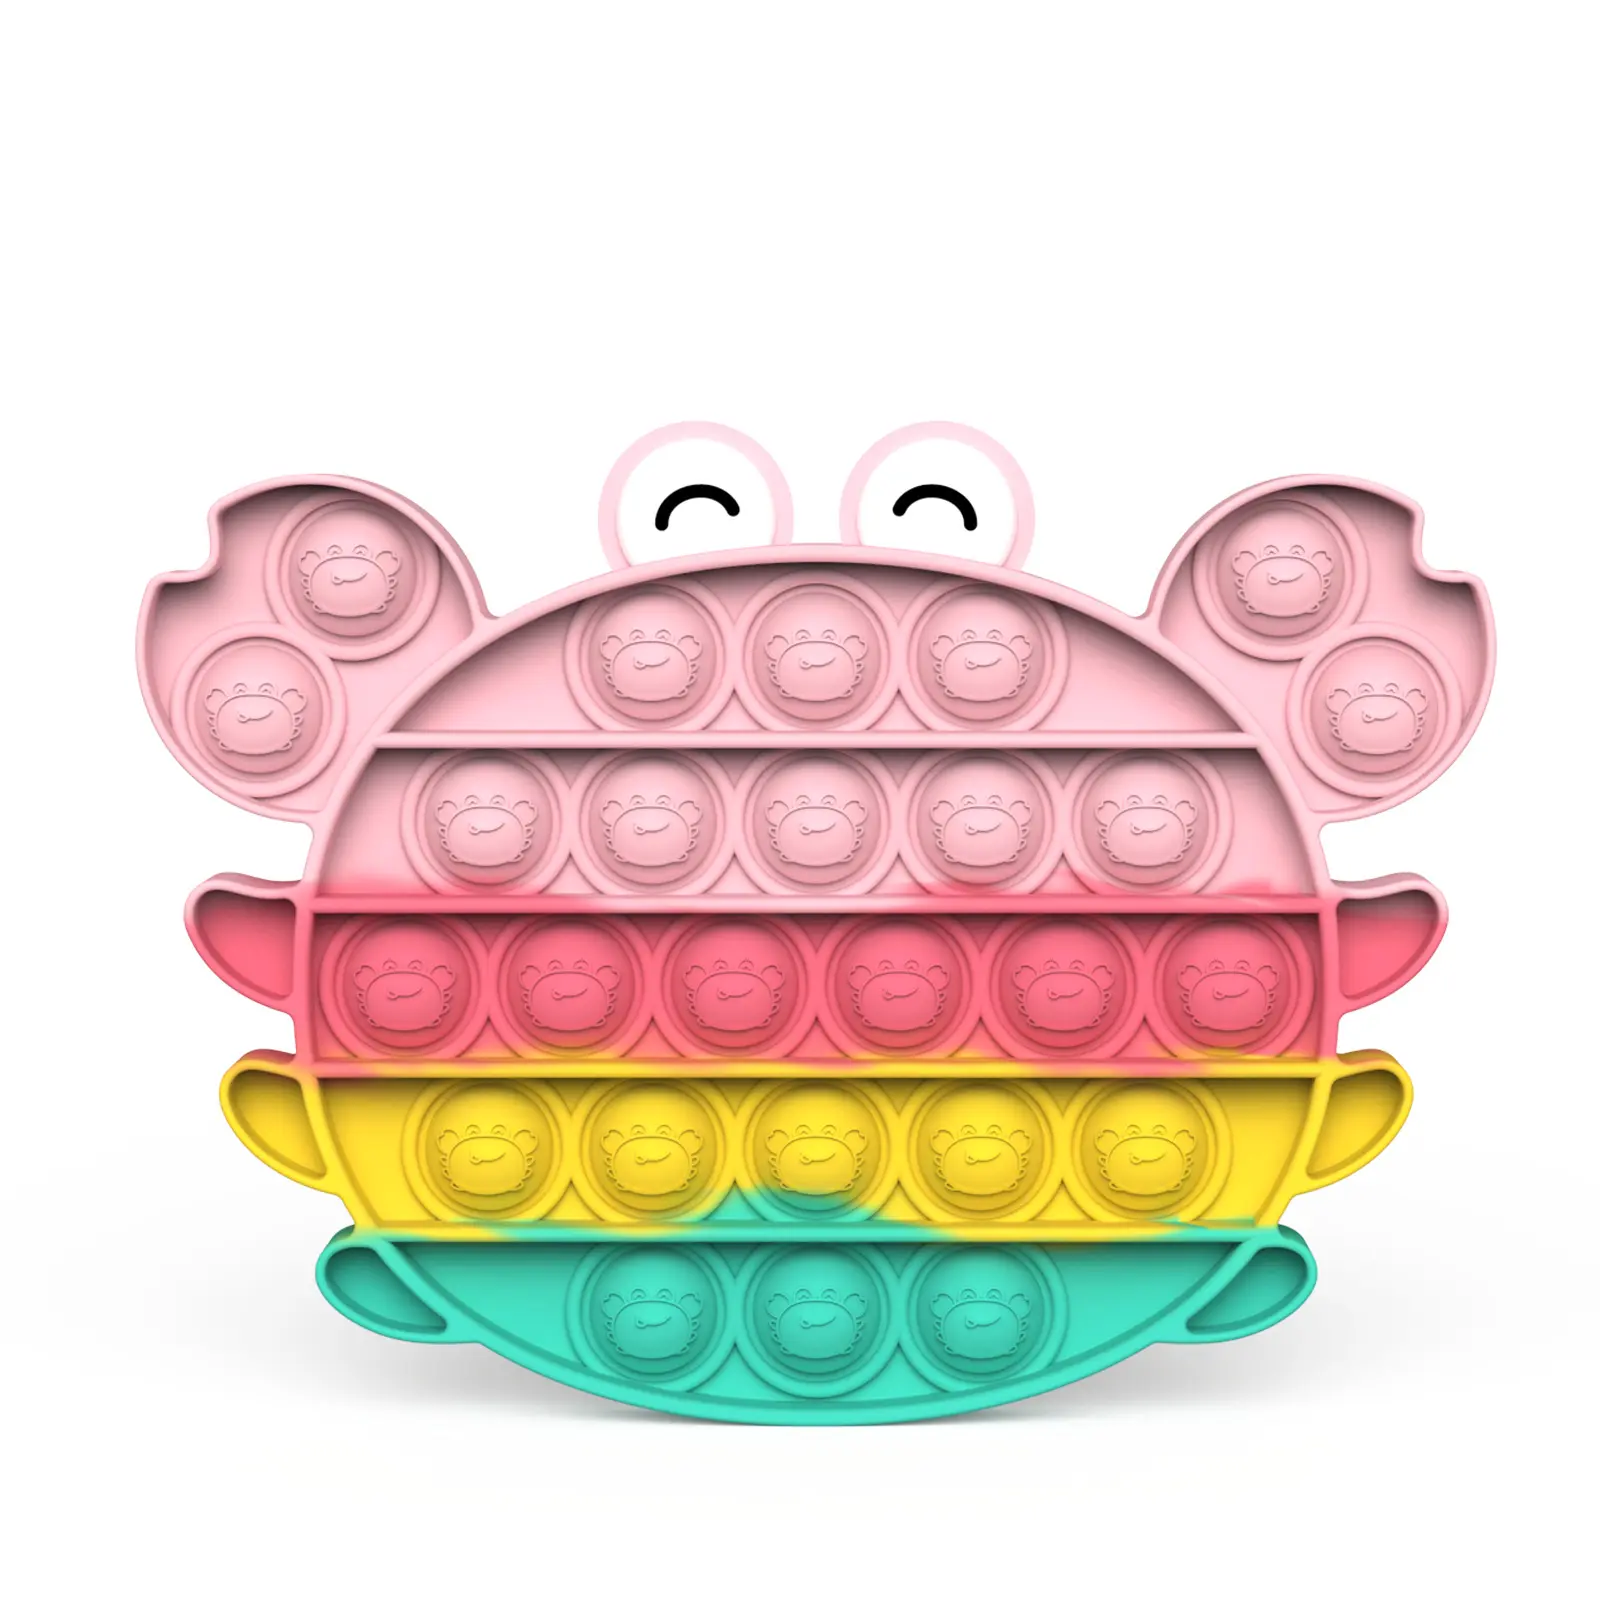 마카롱 피젯 버블 푸시 팝 장난감 레인보우 피젯 장난감 동물 다채로운 팝 푸시 장난감